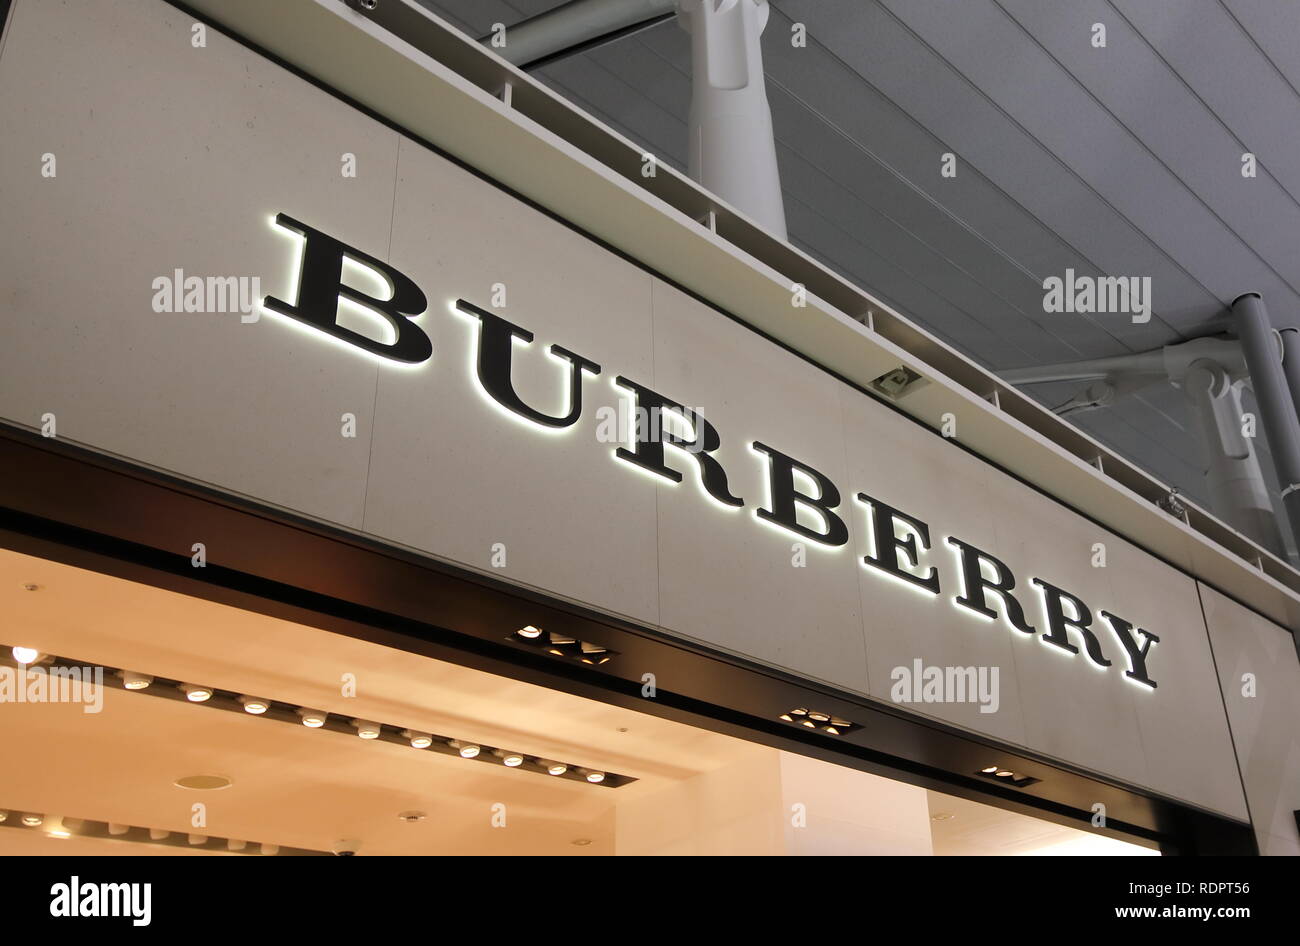 La marca de moda Burberry el logotipo de su empresa Fotografía de stock -  Alamy